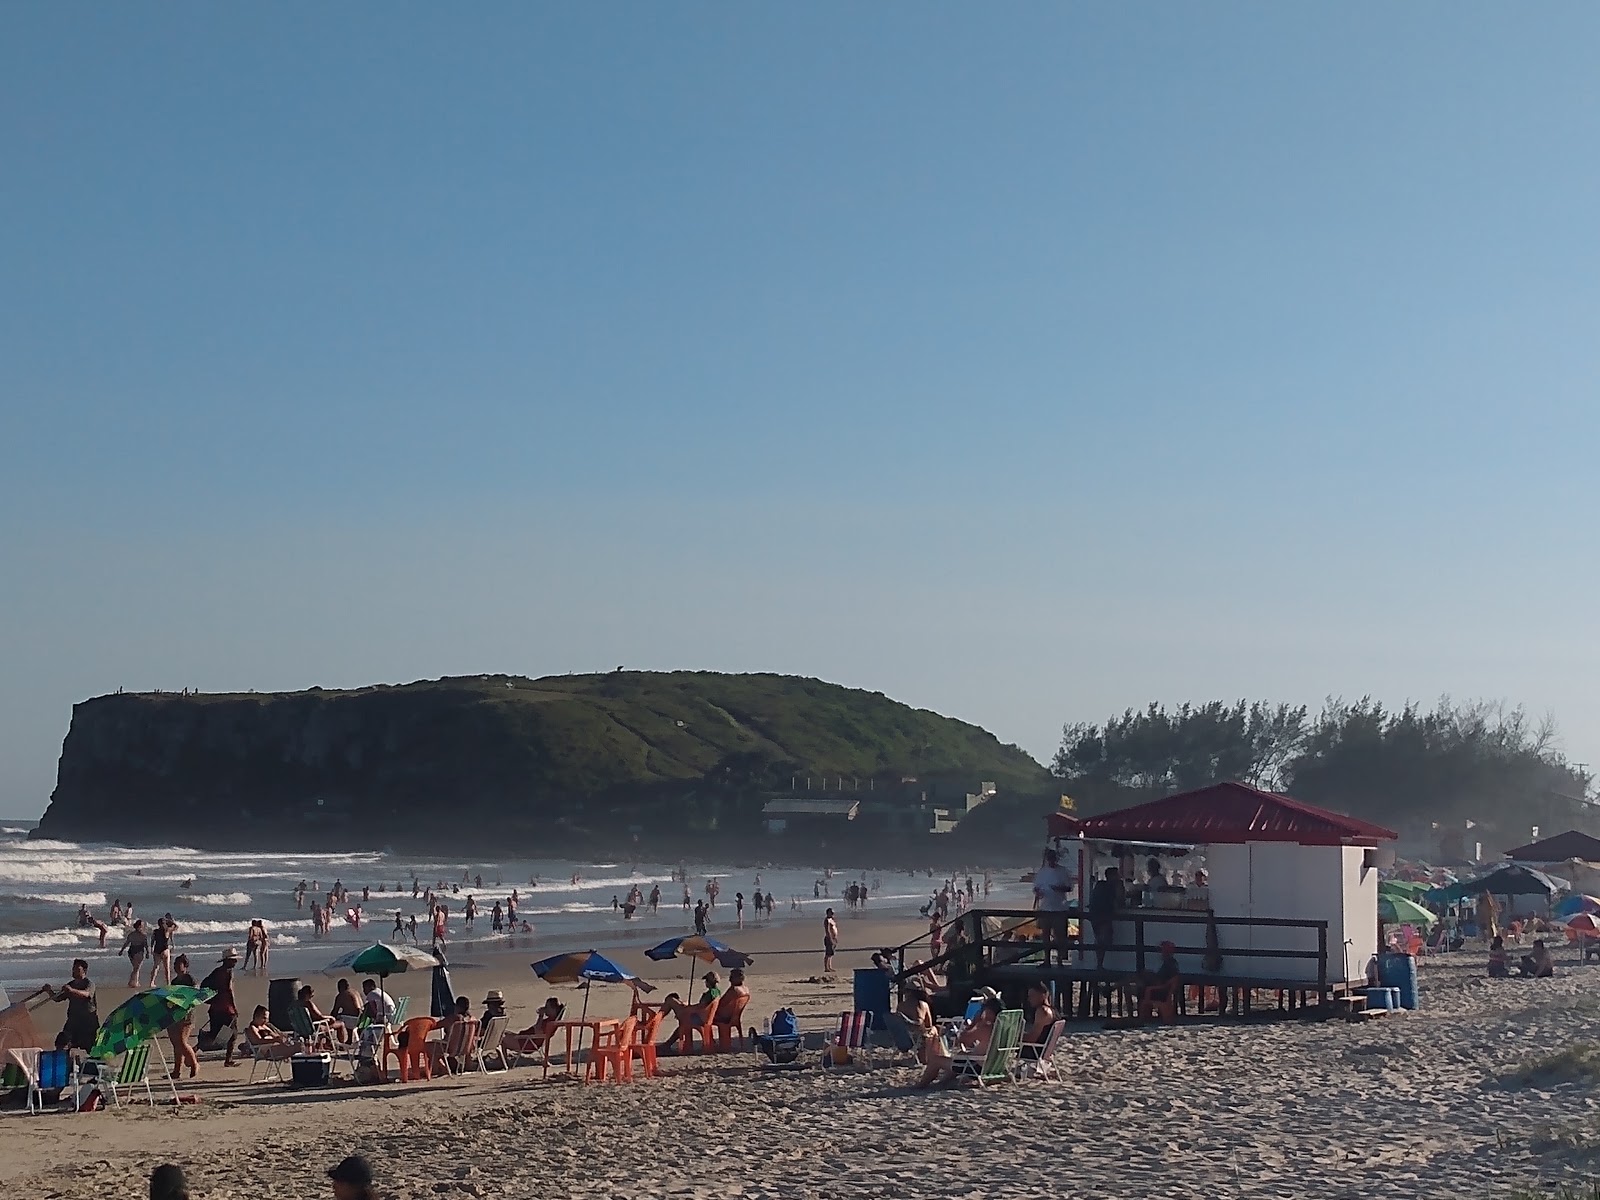 Zdjęcie Plaża Cal - popularne miejsce wśród znawców relaksu